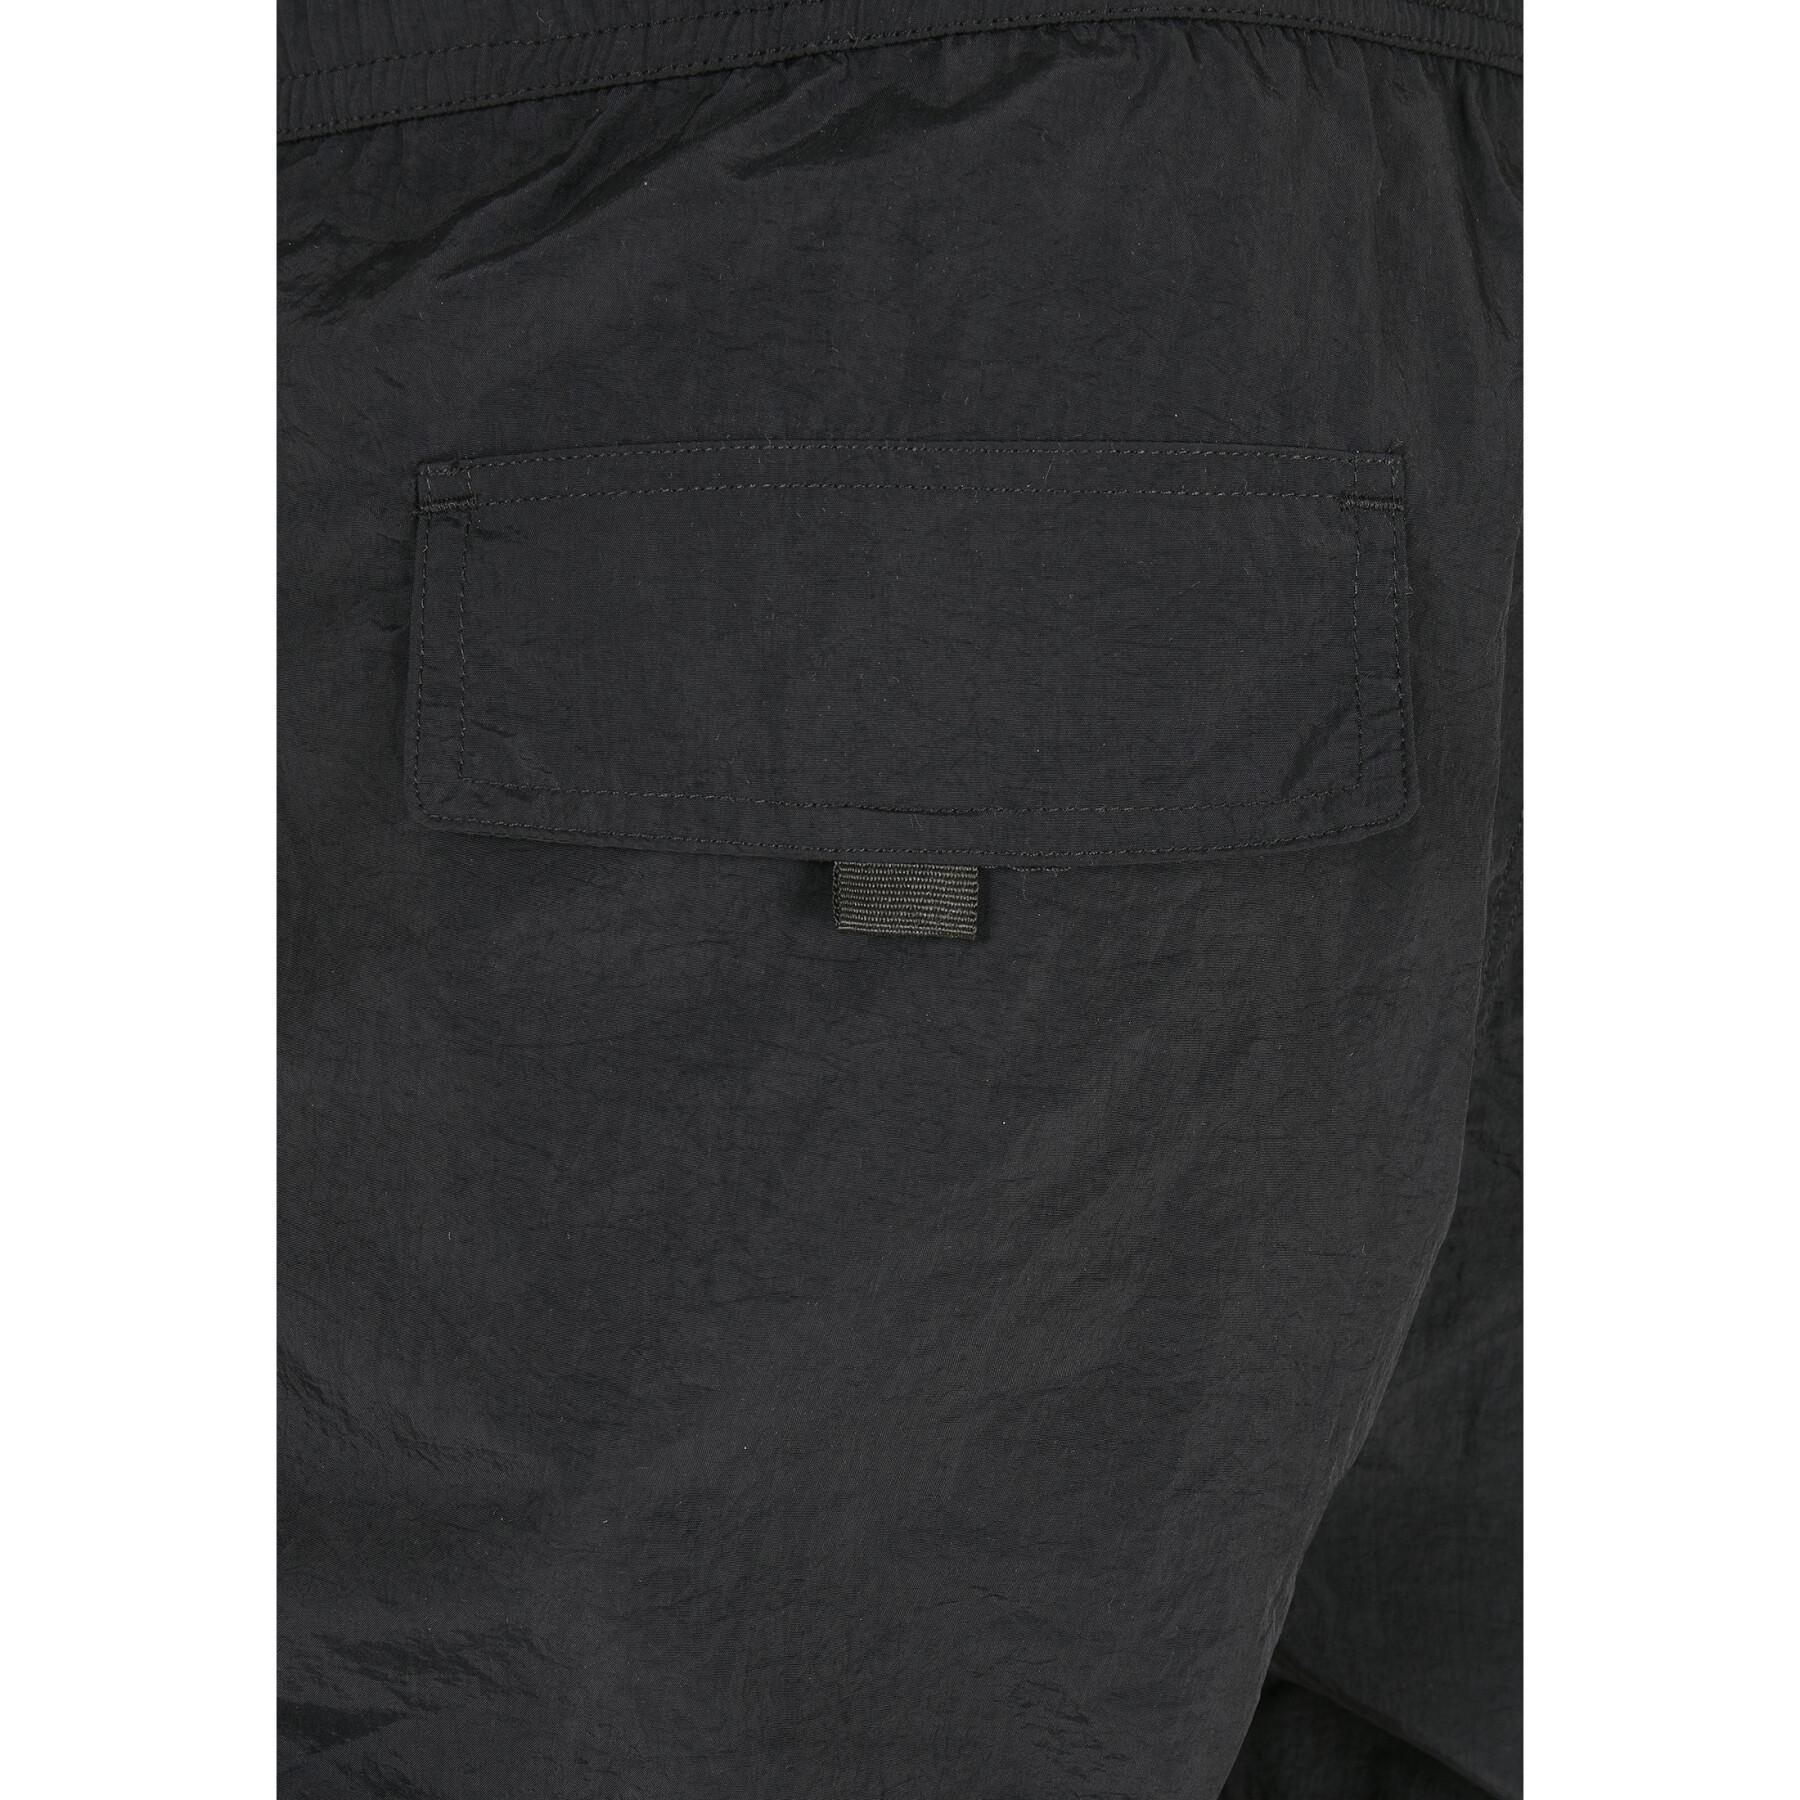 Cargo Pants Urban Classics adjustable nylon (large sizes)